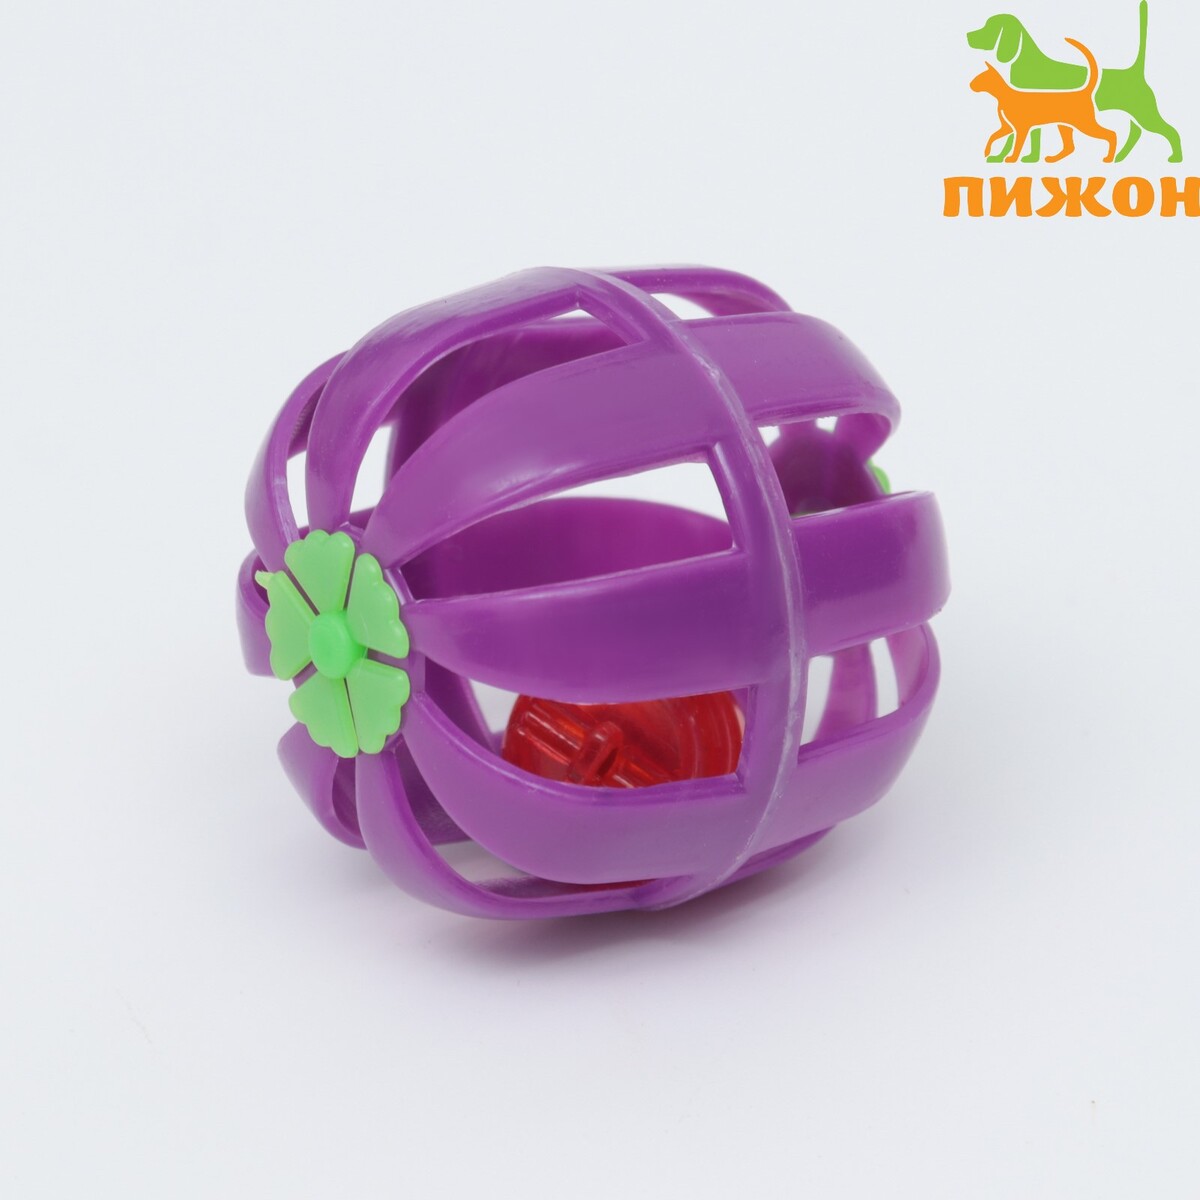 Шарик для кошек с бубенчиком, фиолетовый шарик для кошек на присоске с бубенчиком 4 см красная зеленая